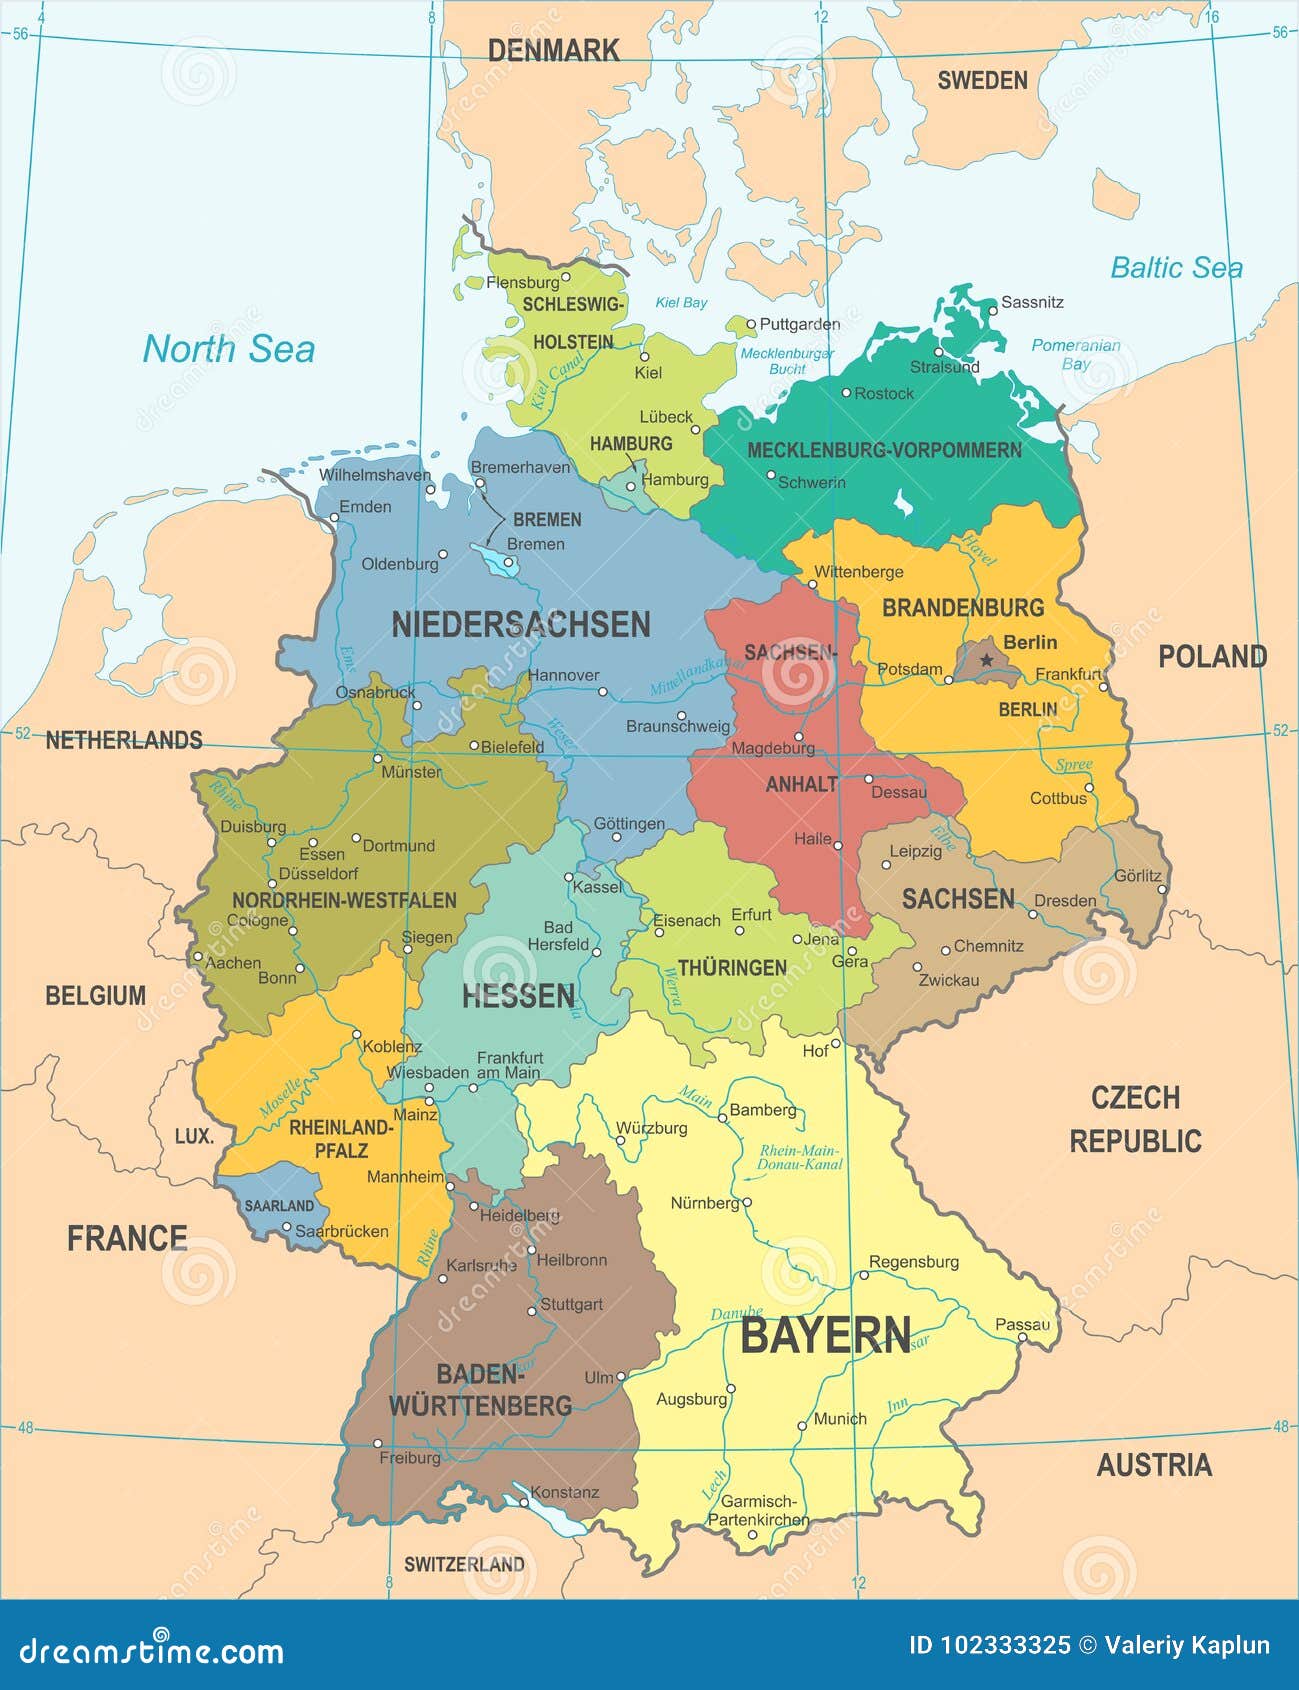 德國地圖下載 - 德國介紹